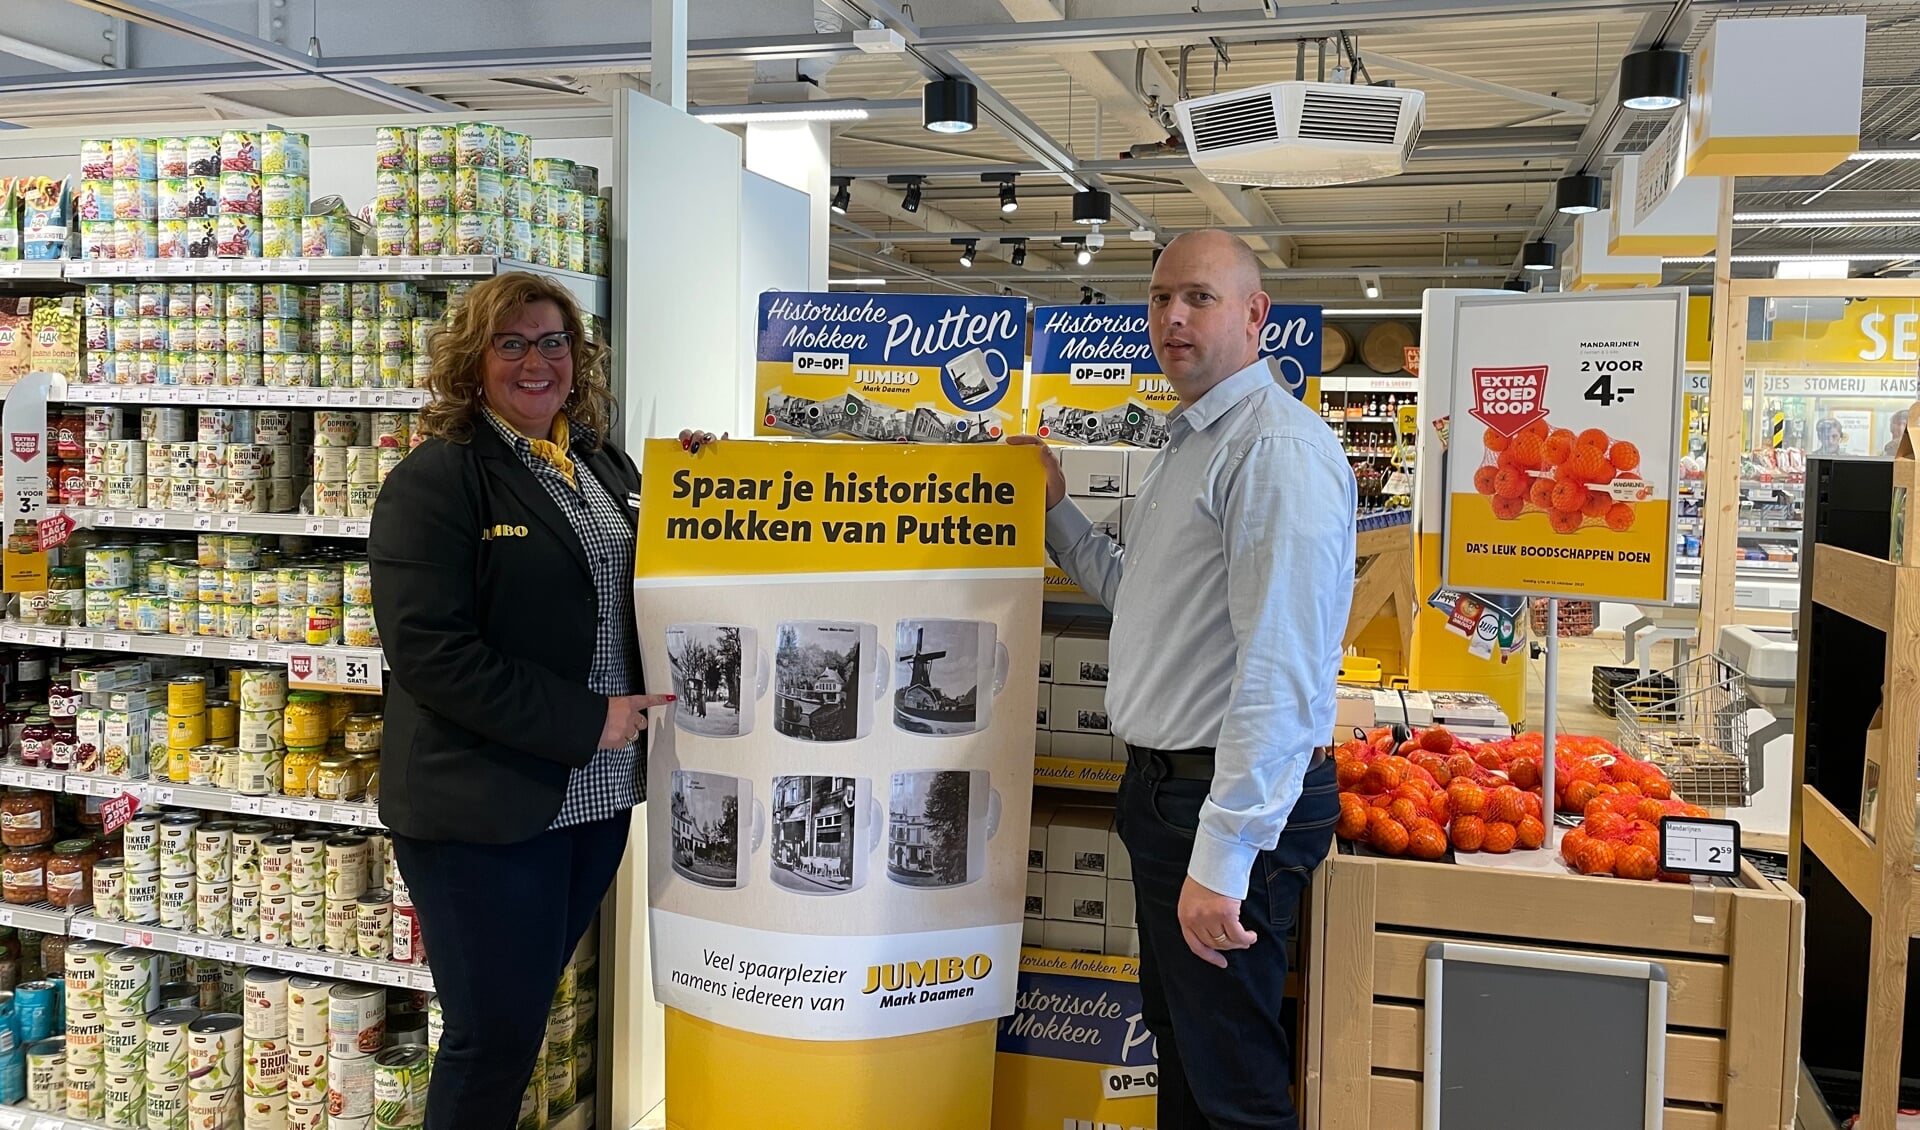 Hoofdkassière Mirjan samen met supermarkteigenaar Mark Daamen nodigen uit om zes historische mokken te sparen.